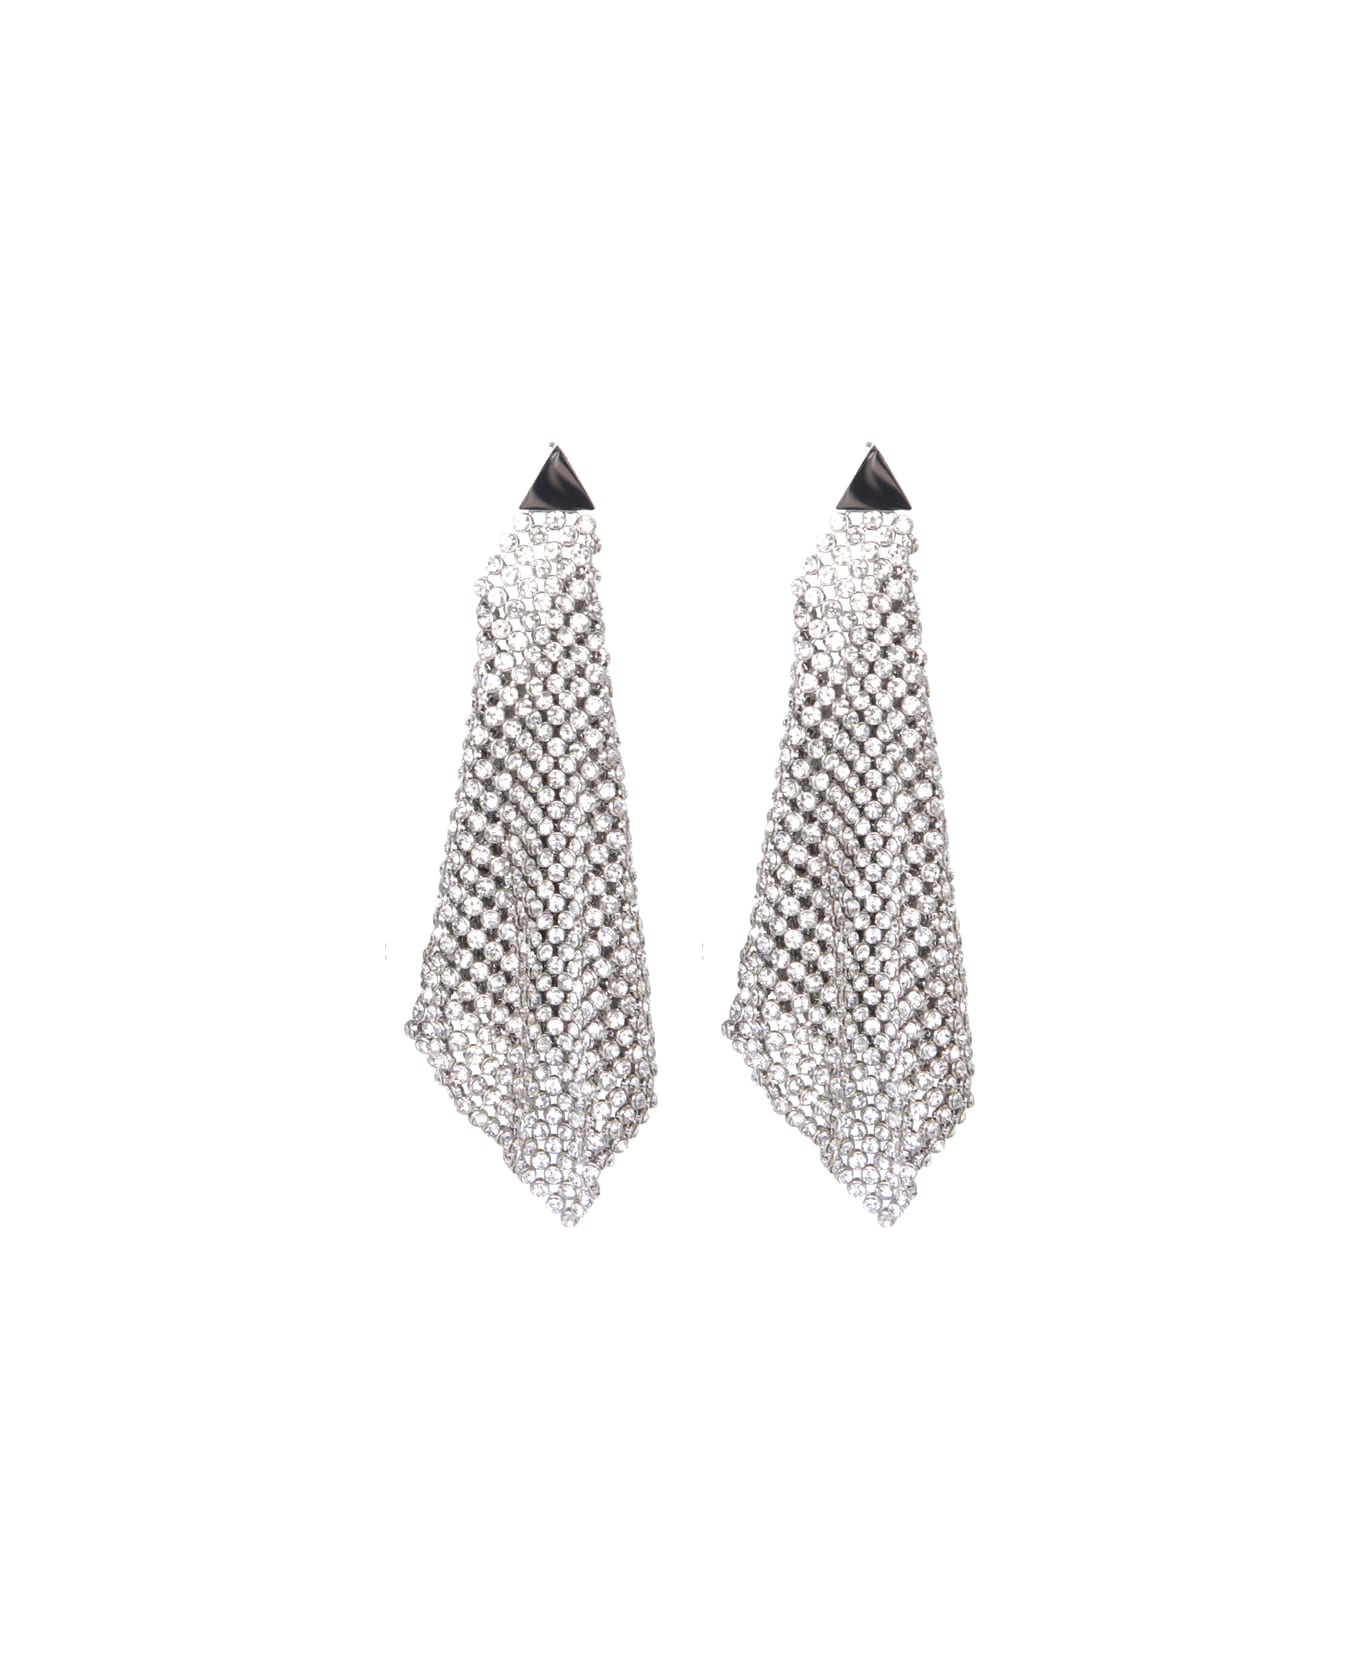 Paco Rabanne Silver Pixel Crystal Earrings - Metallic